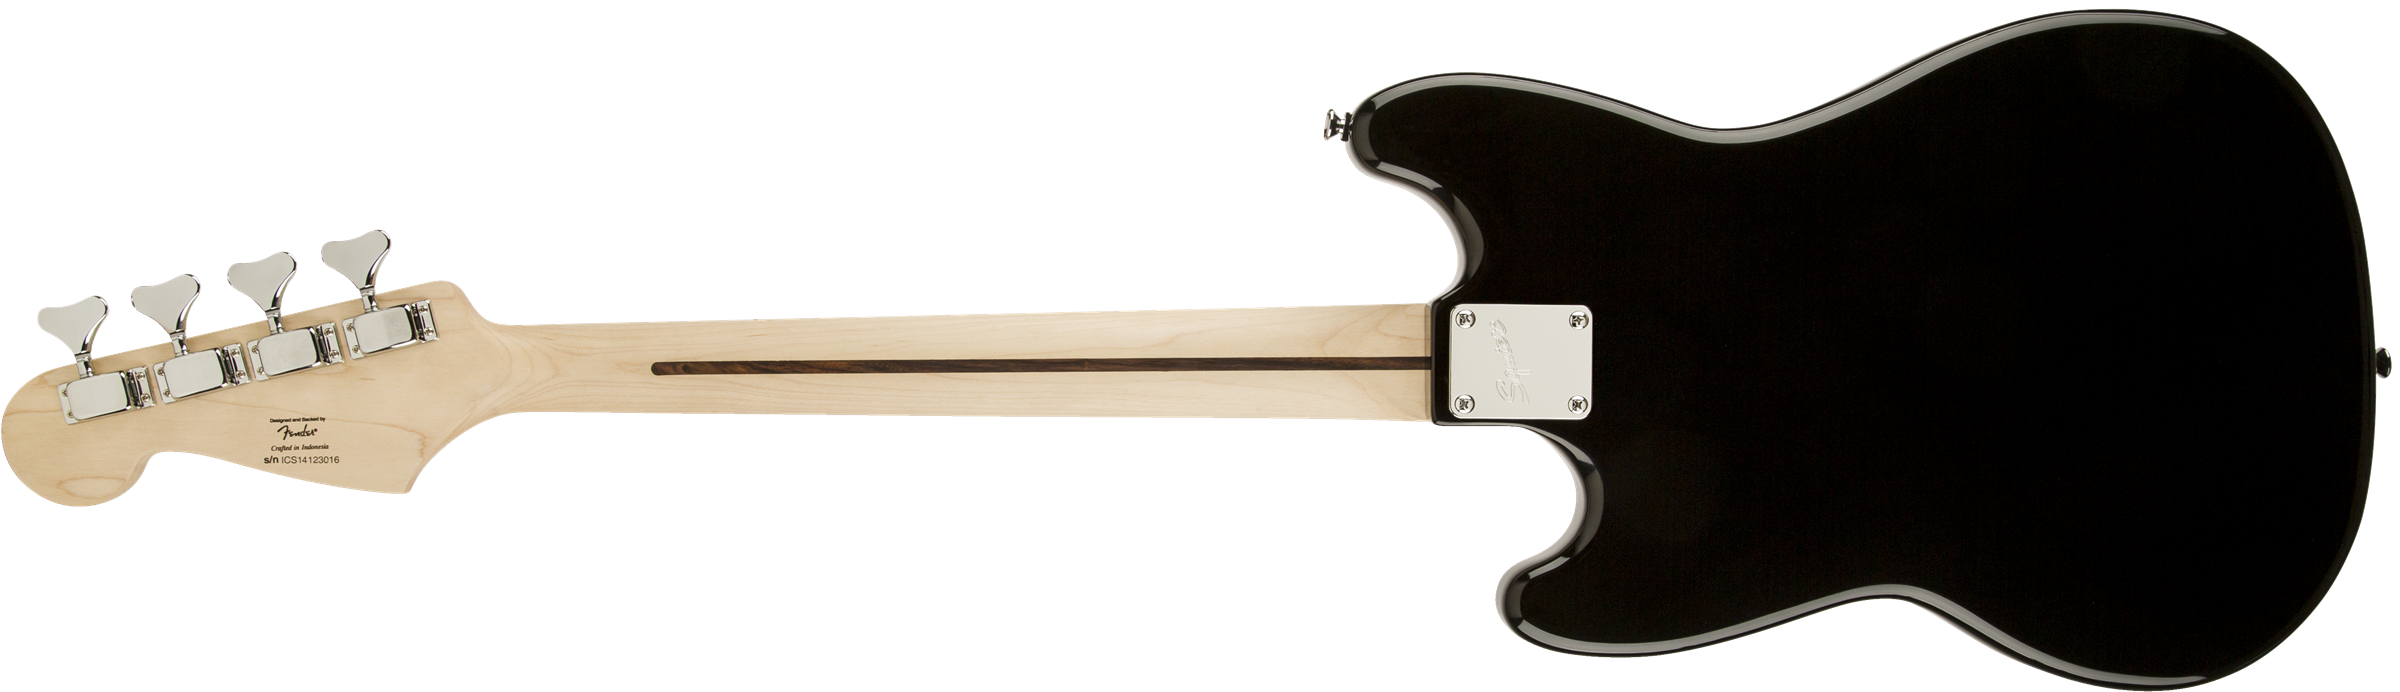 Squier Bronco Bass Mn - Black - Bajo eléctrico para niños - Variation 1